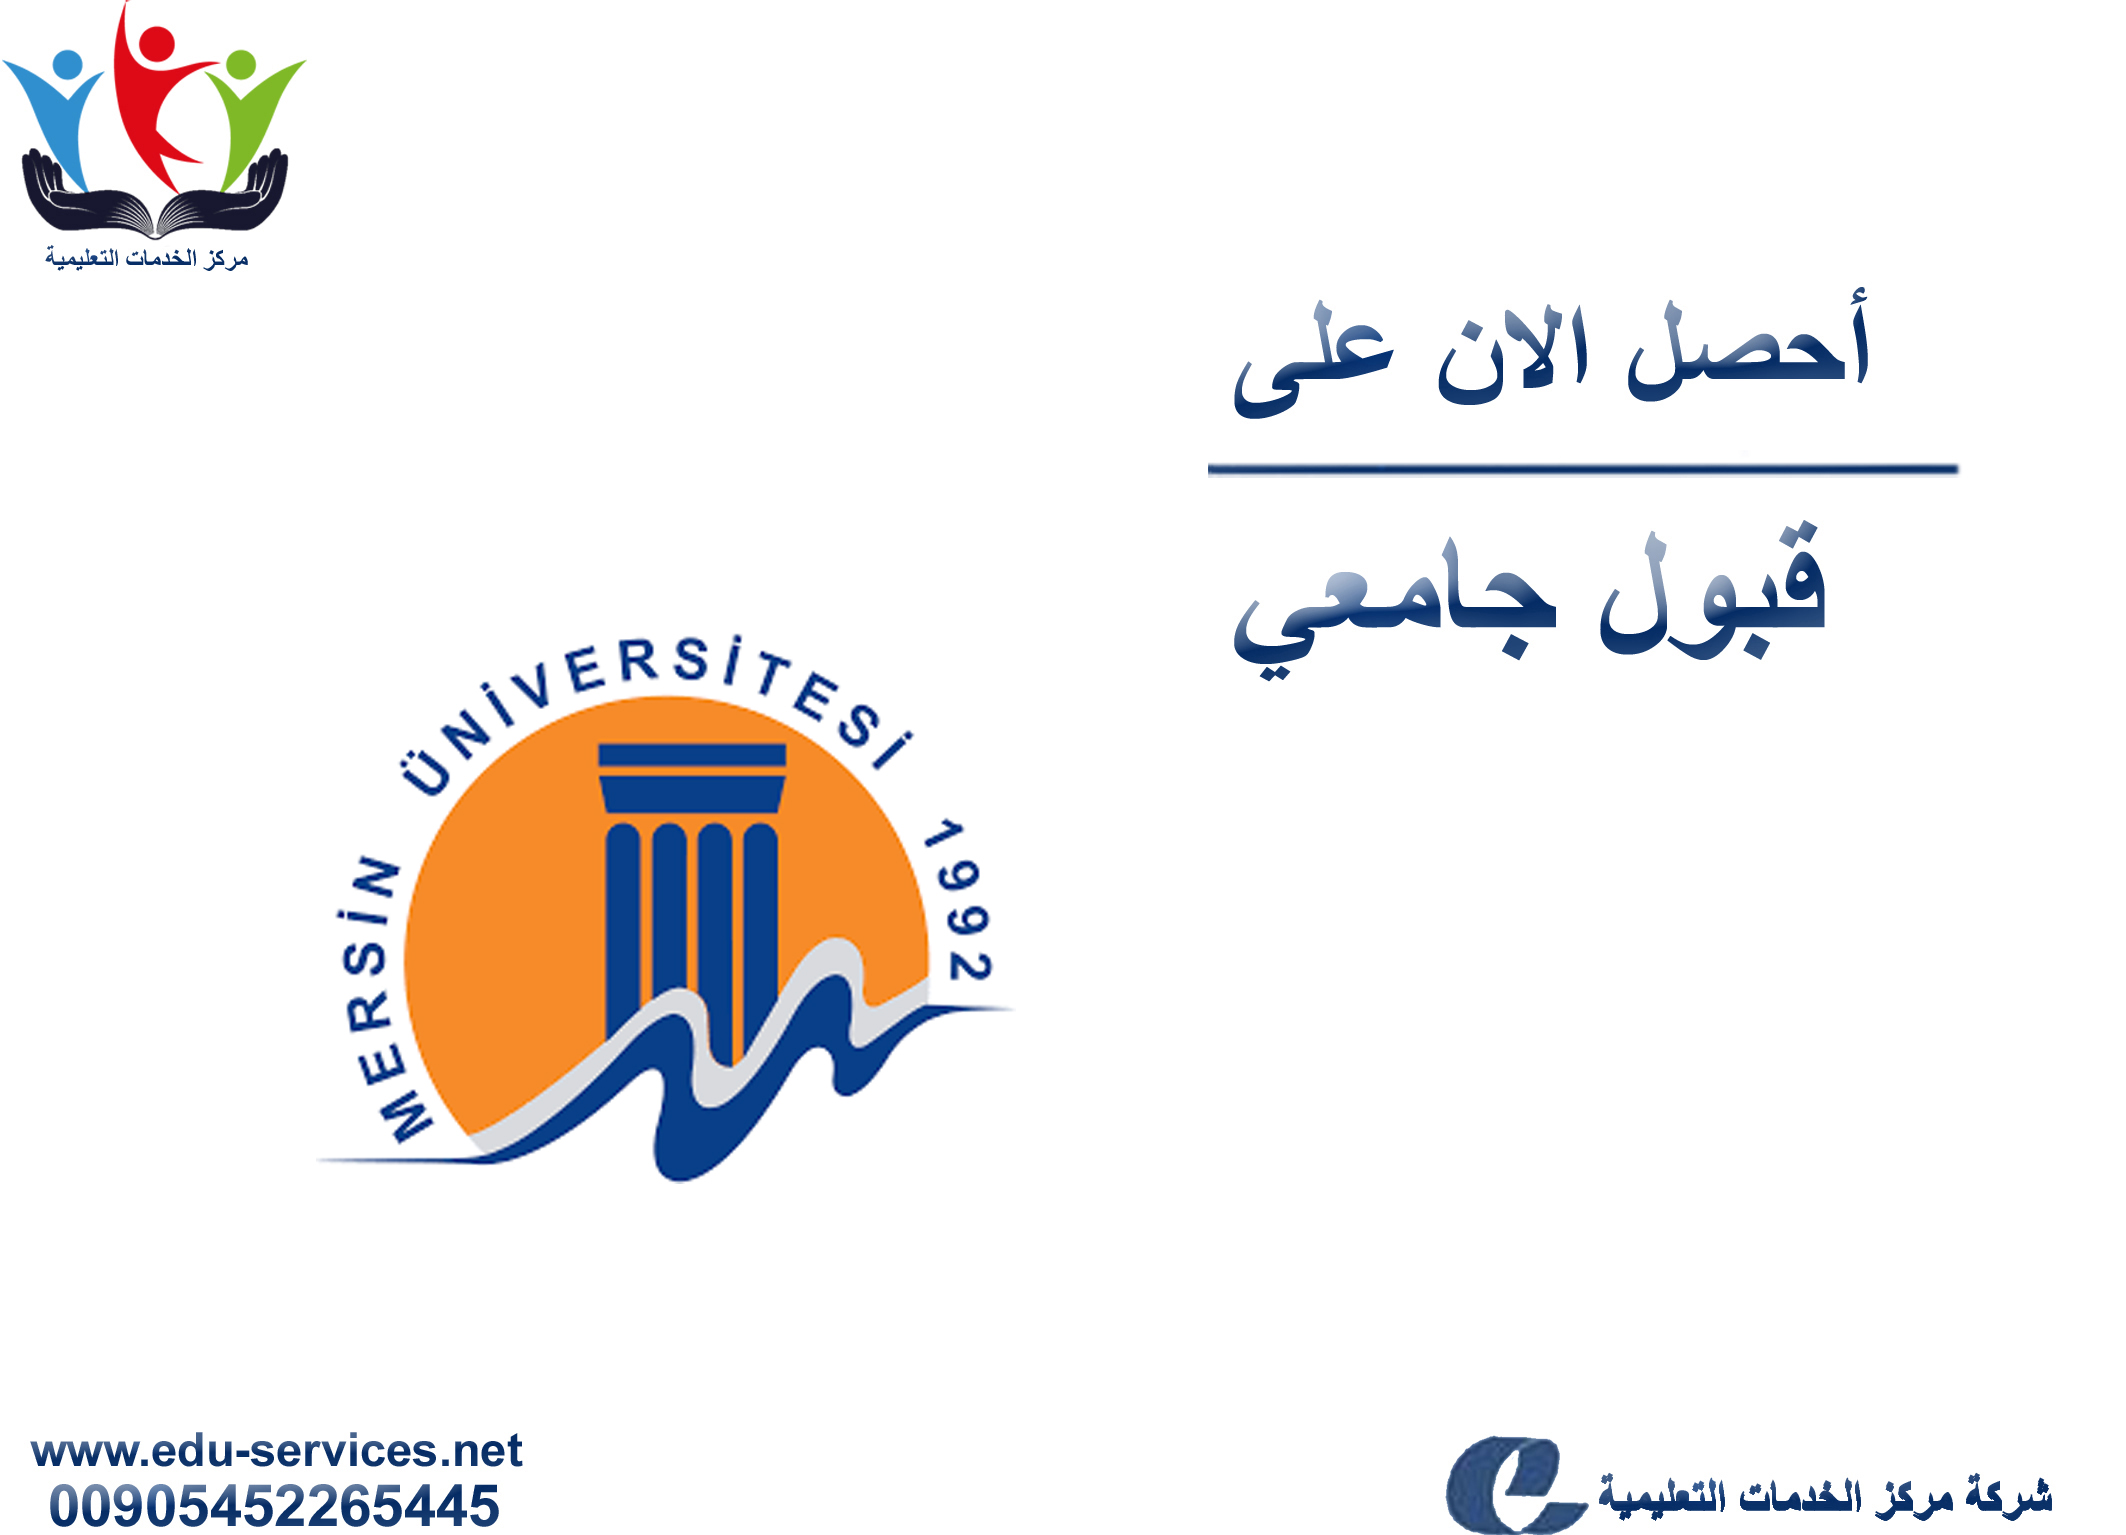 افتتاح التسجيل على جامعة مرسين لبرنامج الدراسات العليا للعام 2019-2020